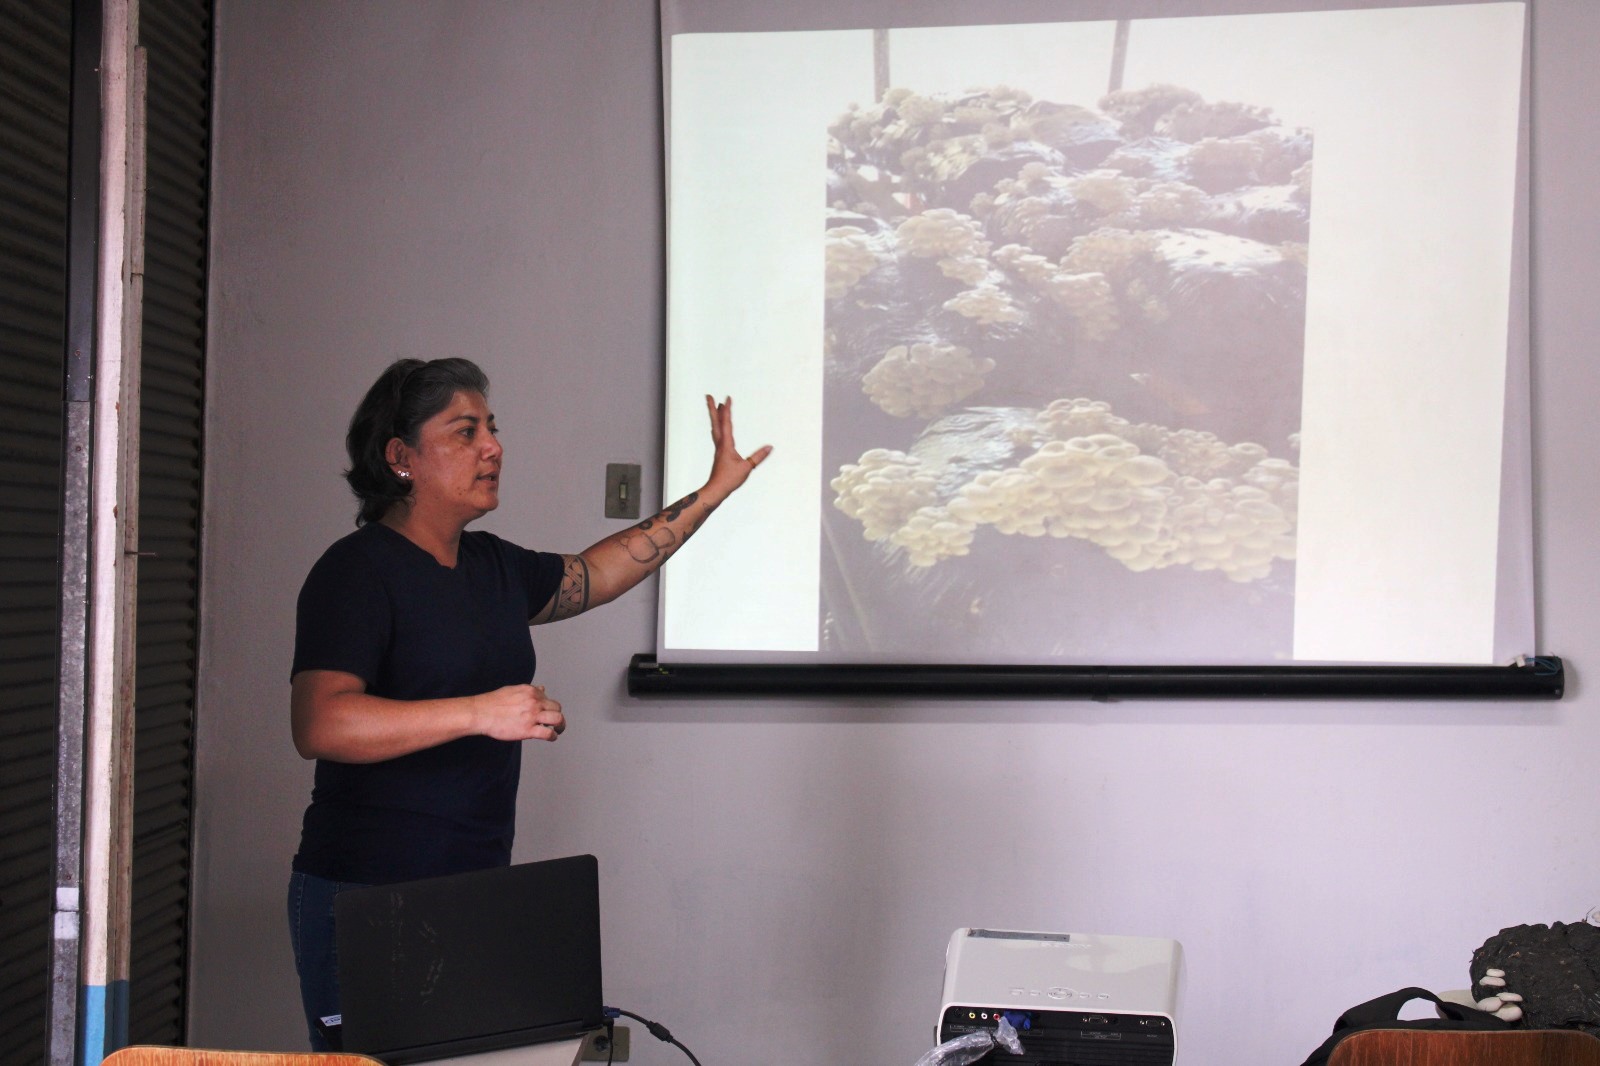 Prefeitura promoverá curso de cultivo de cogumelo Shitake - Itapecerica da  Serra